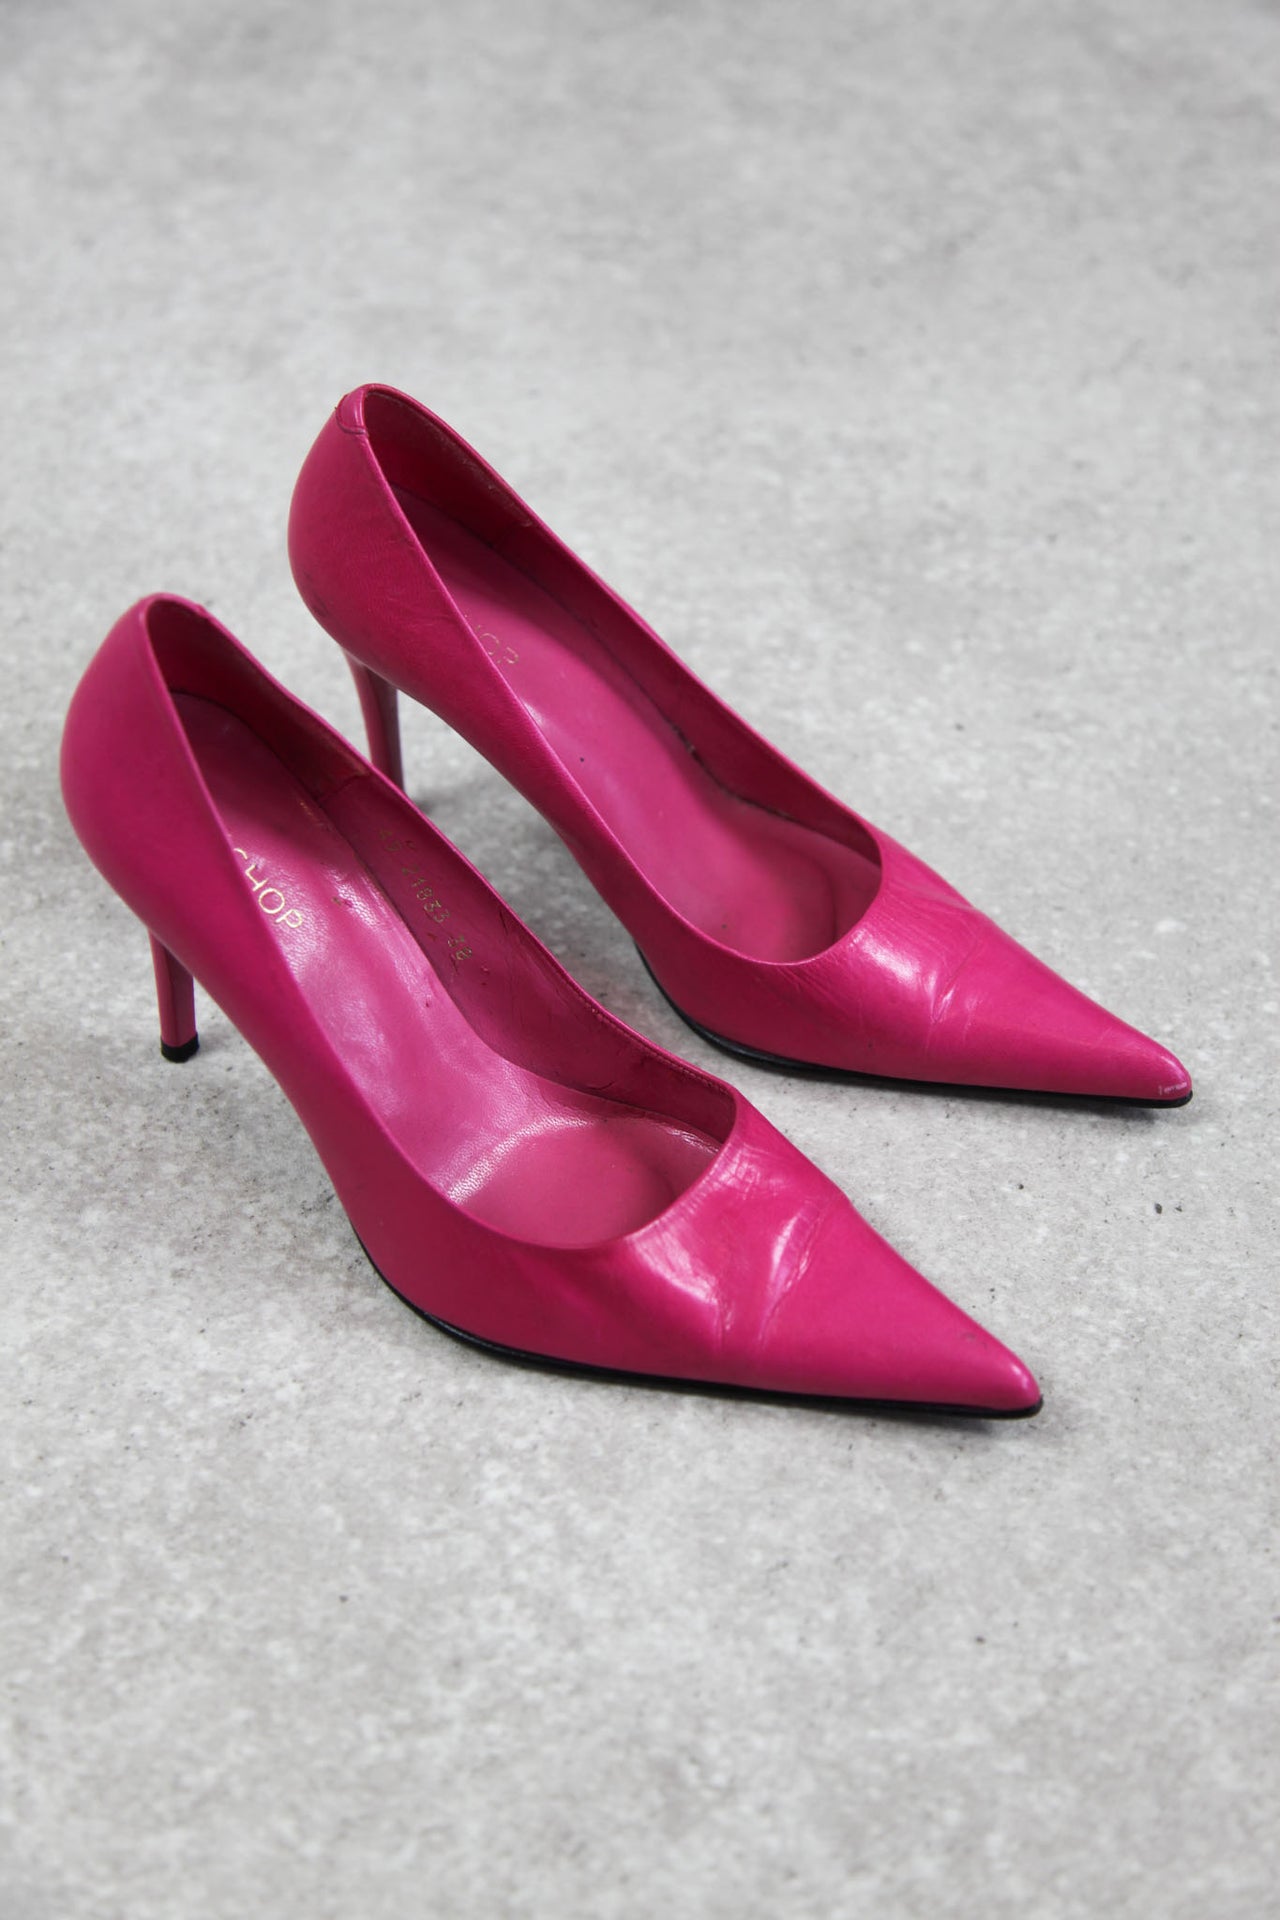 Topshop Bright Pink Heels (EU38/ UK5)